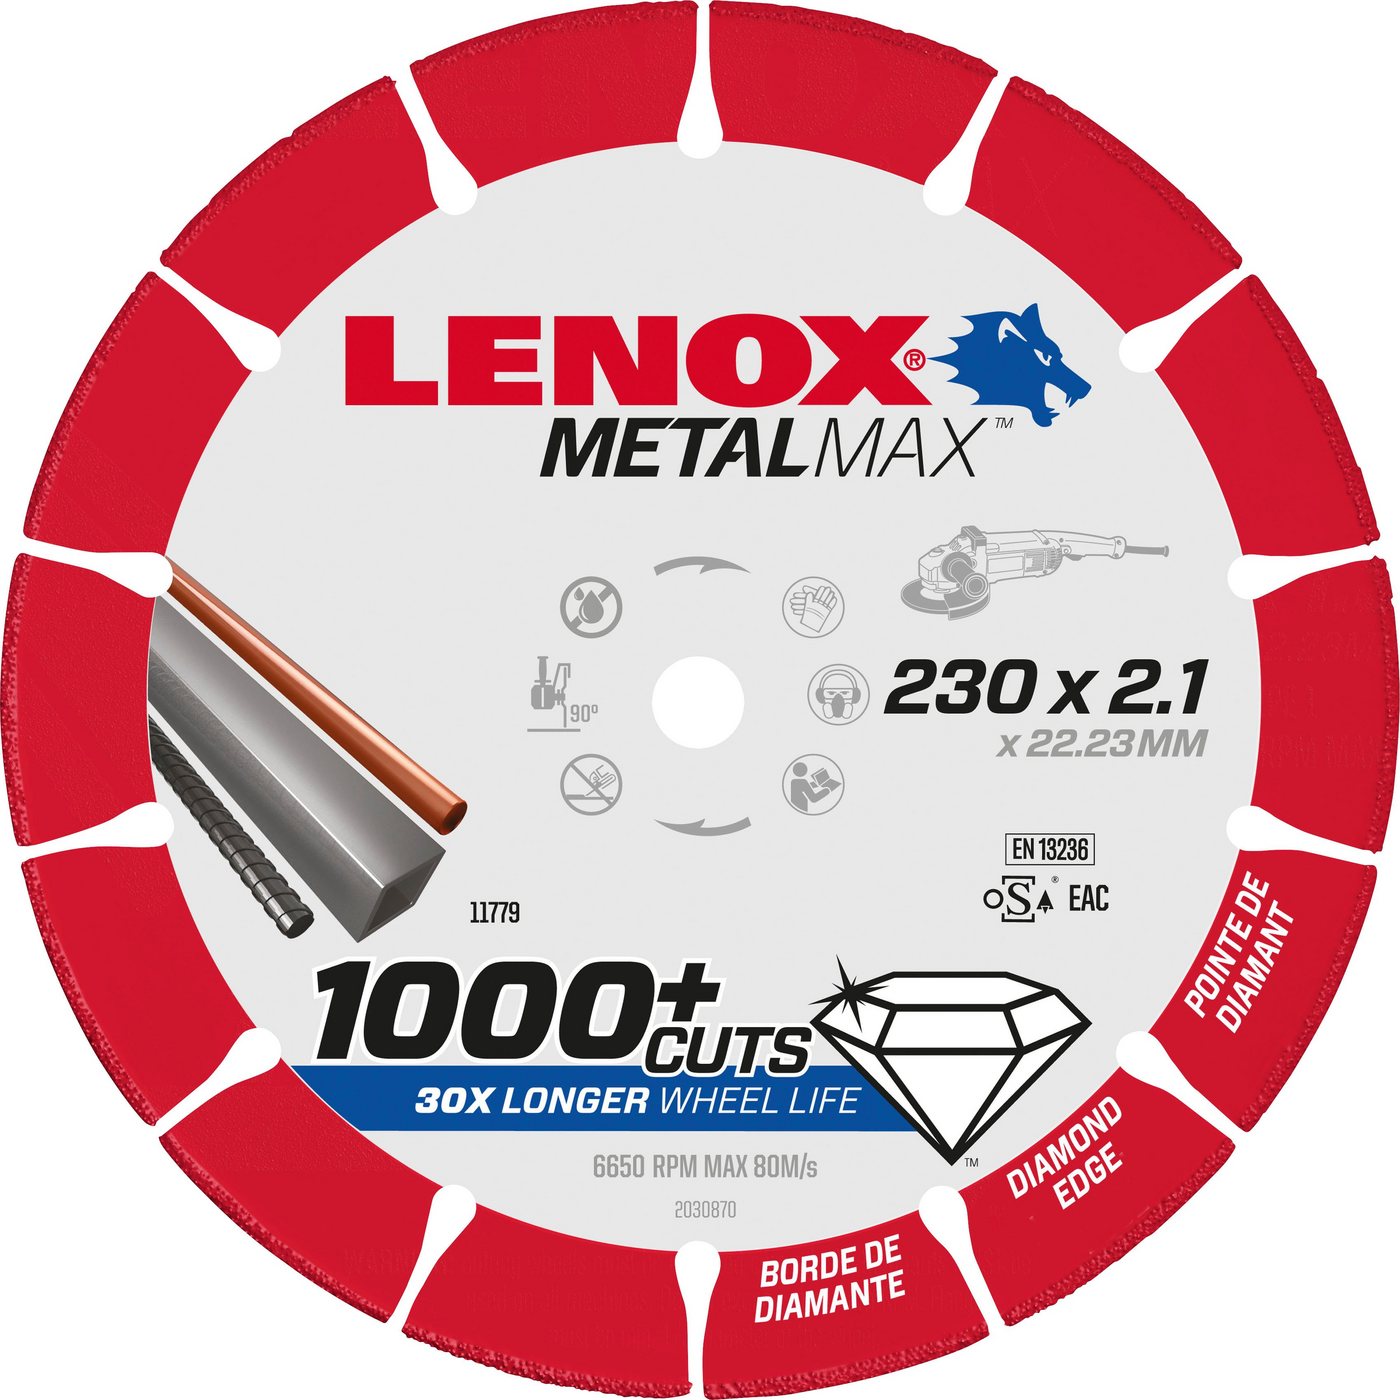 Lenox Diamanttrennscheibe 2030870 von Lenox